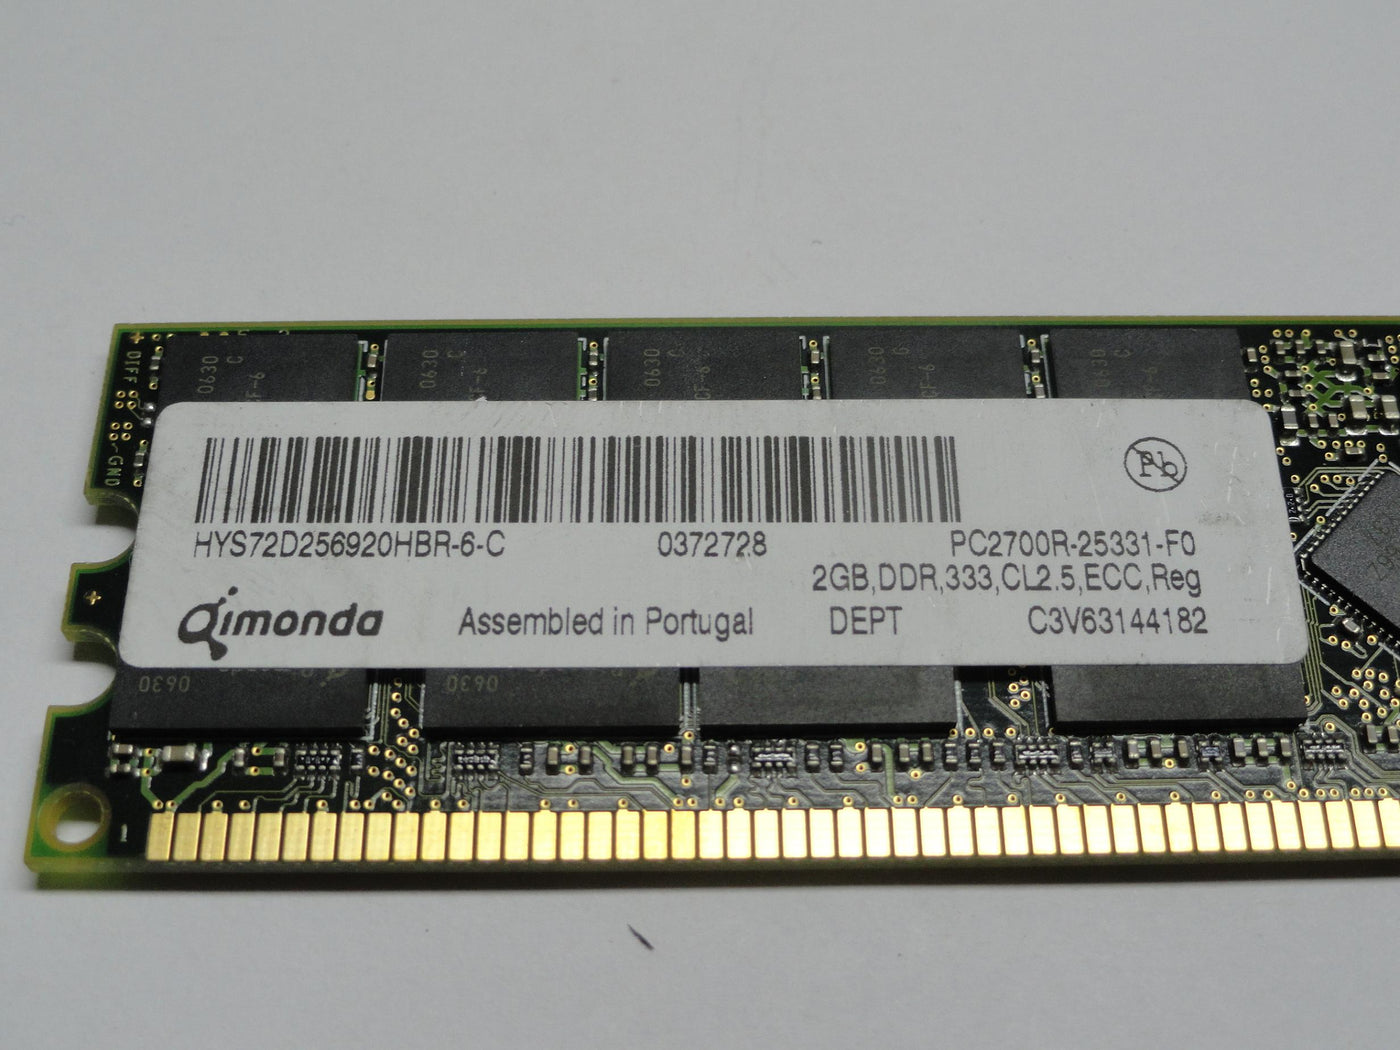 PR16061_PC2700R-25331-F0_Qimonda 2GB 184p PC2700 DDR333 ECC RDIMM RAM - Image2